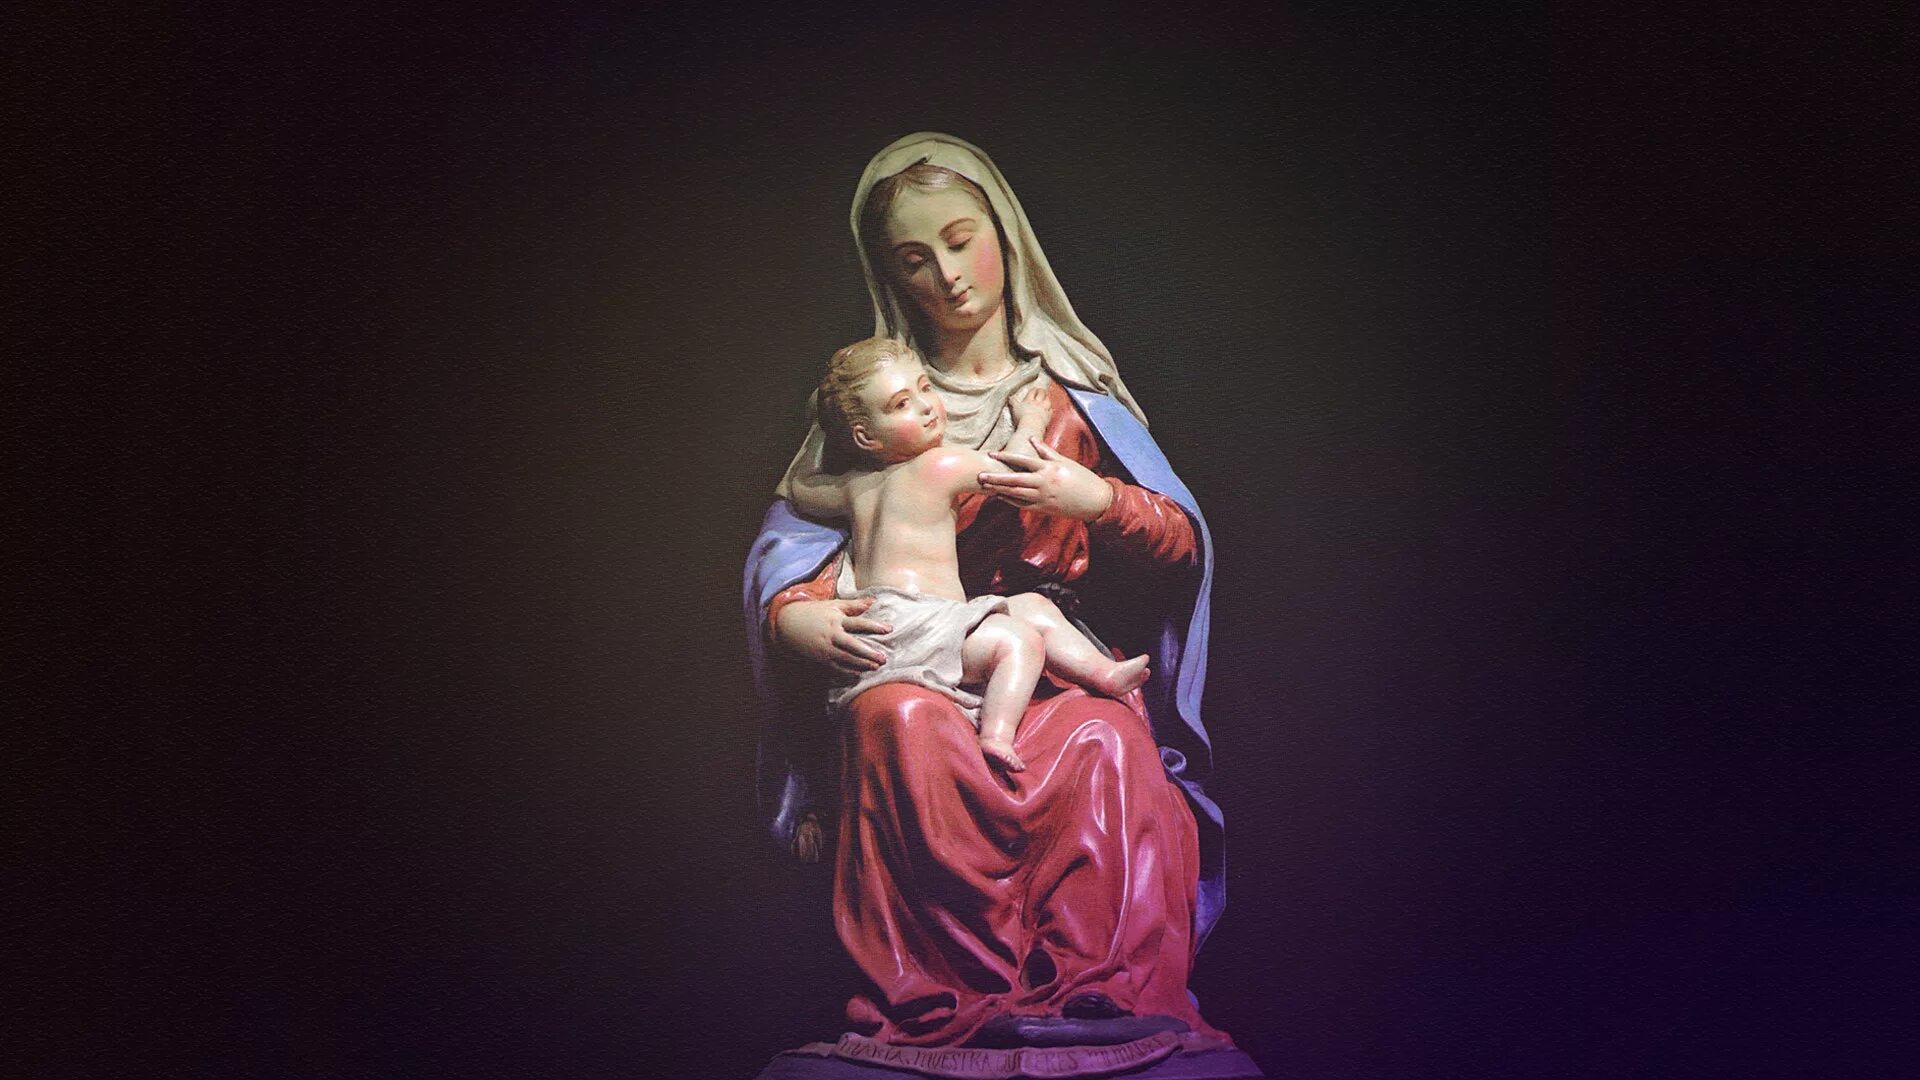 Богородица на дне. Мария, мать Иисуса / Mary, mother of Jesus. Иисус Христос и Дева Мария. Дева Мария католическая. Мать Иисуса и Мария Магдалена.